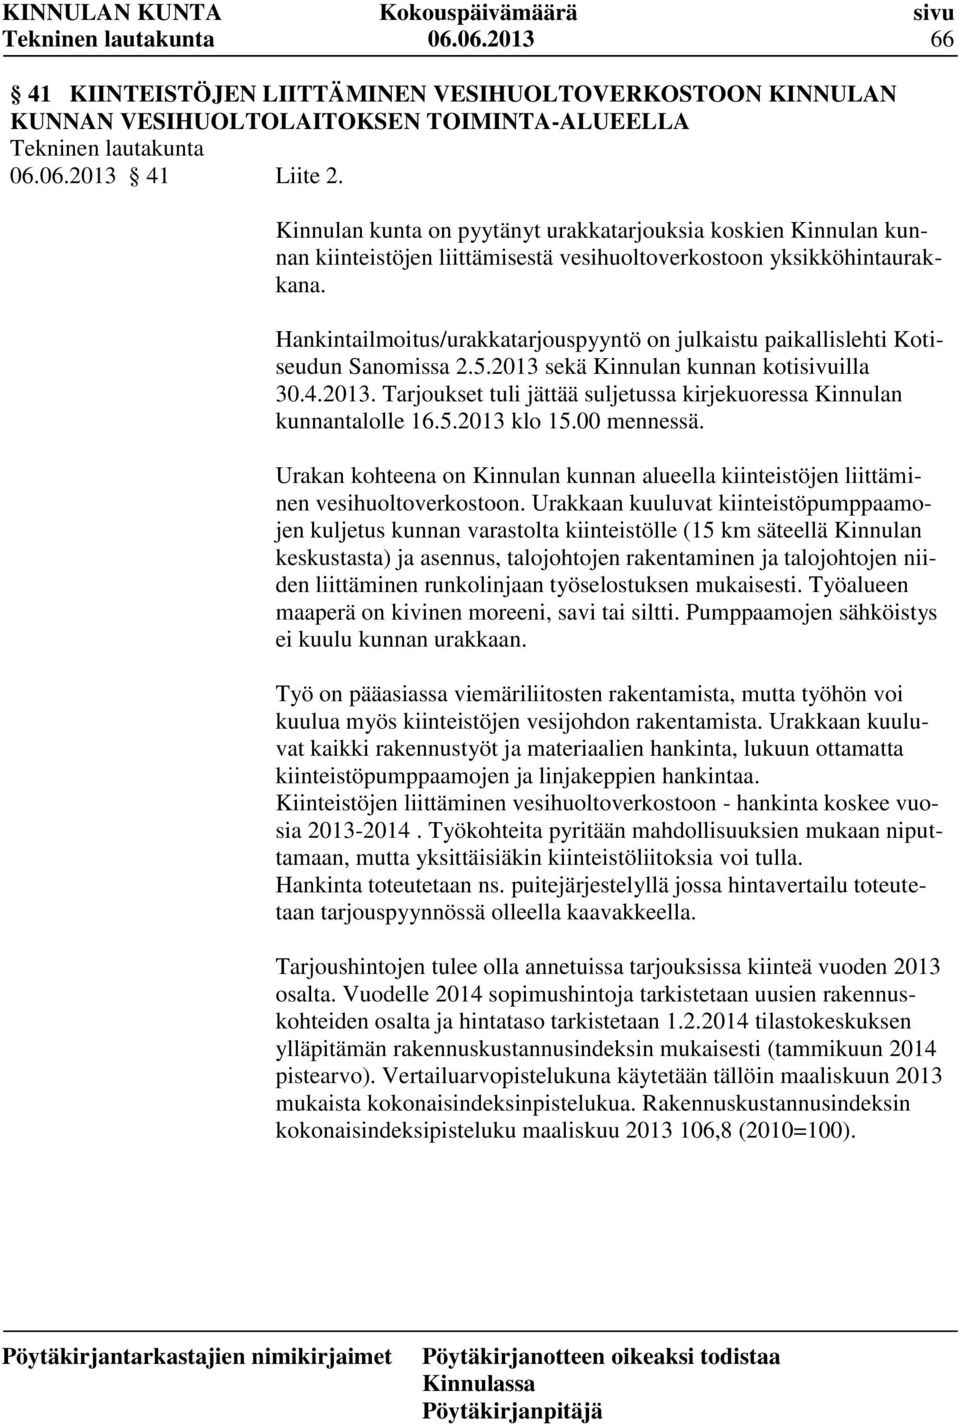 Hankintailmoitus/urakkatarjouspyyntö on julkaistu paikallislehti Kotiseudun Sanomissa 2.5.2013 sekä Kinnulan kunnan kotisivuilla 30.4.2013. Tarjoukset tuli jättää suljetussa kirjekuoressa Kinnulan kunnantalolle 16.